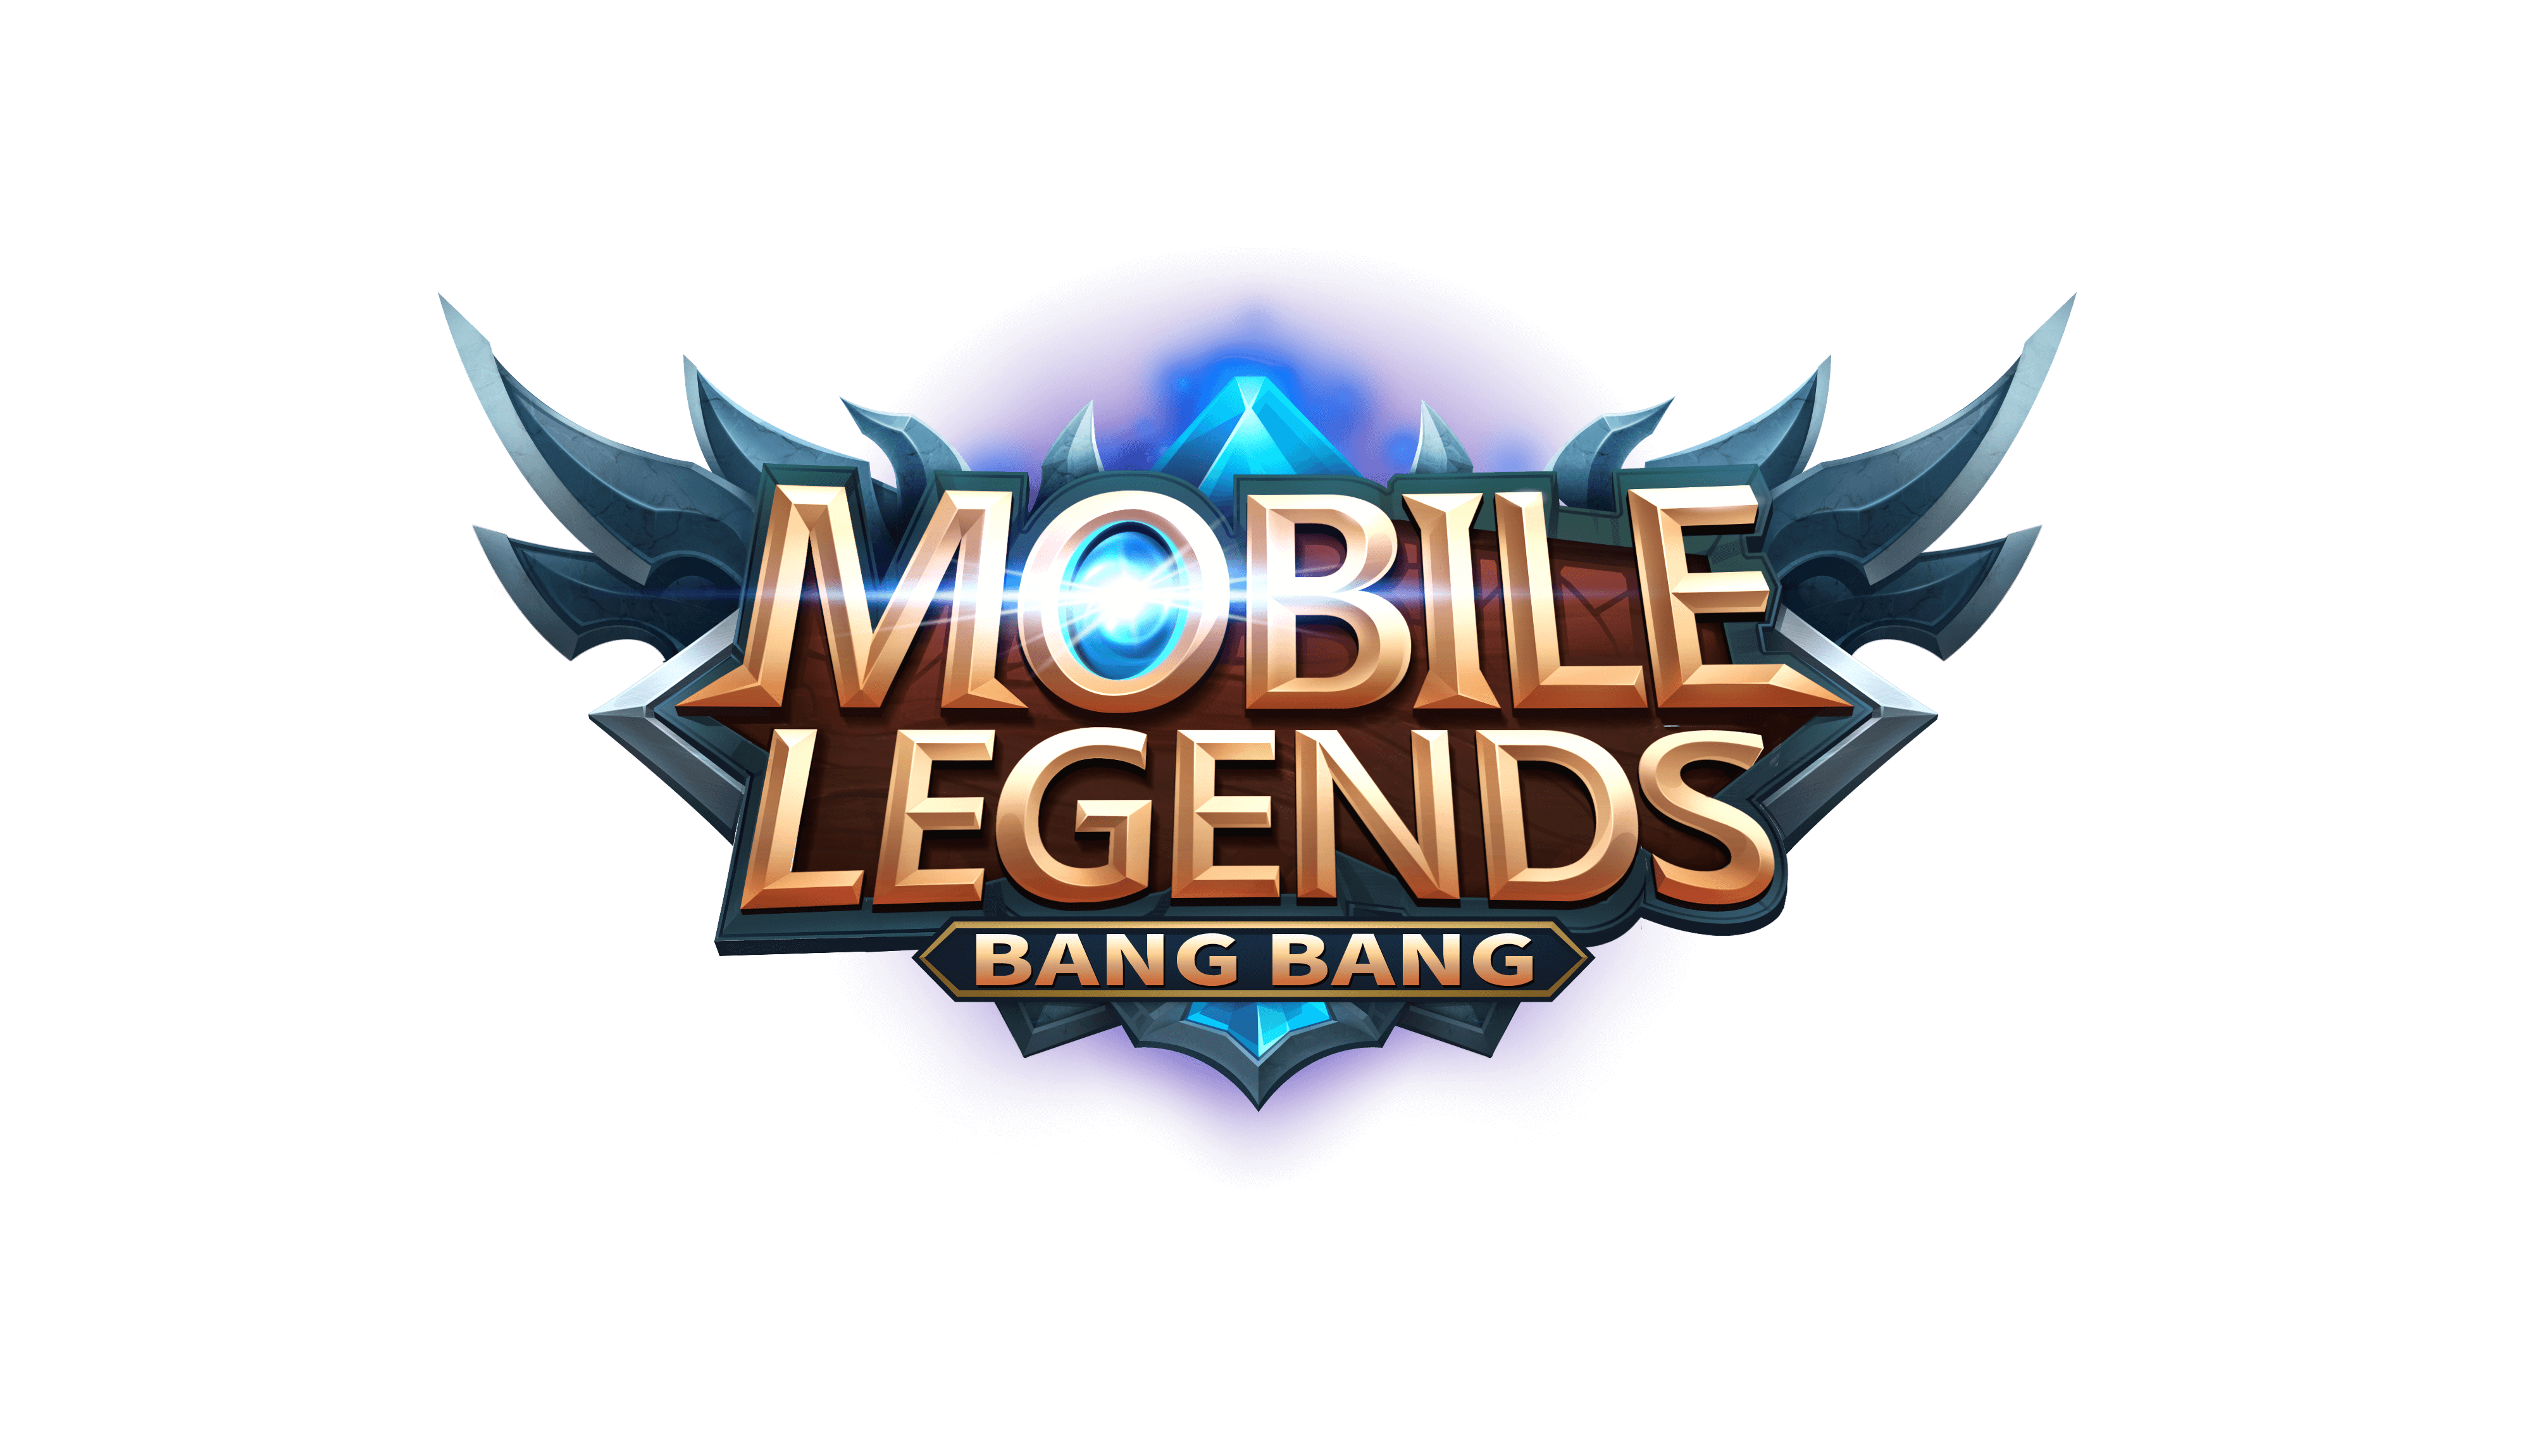 Mobile Legend Logo Png Free Download Mobile Legends Images